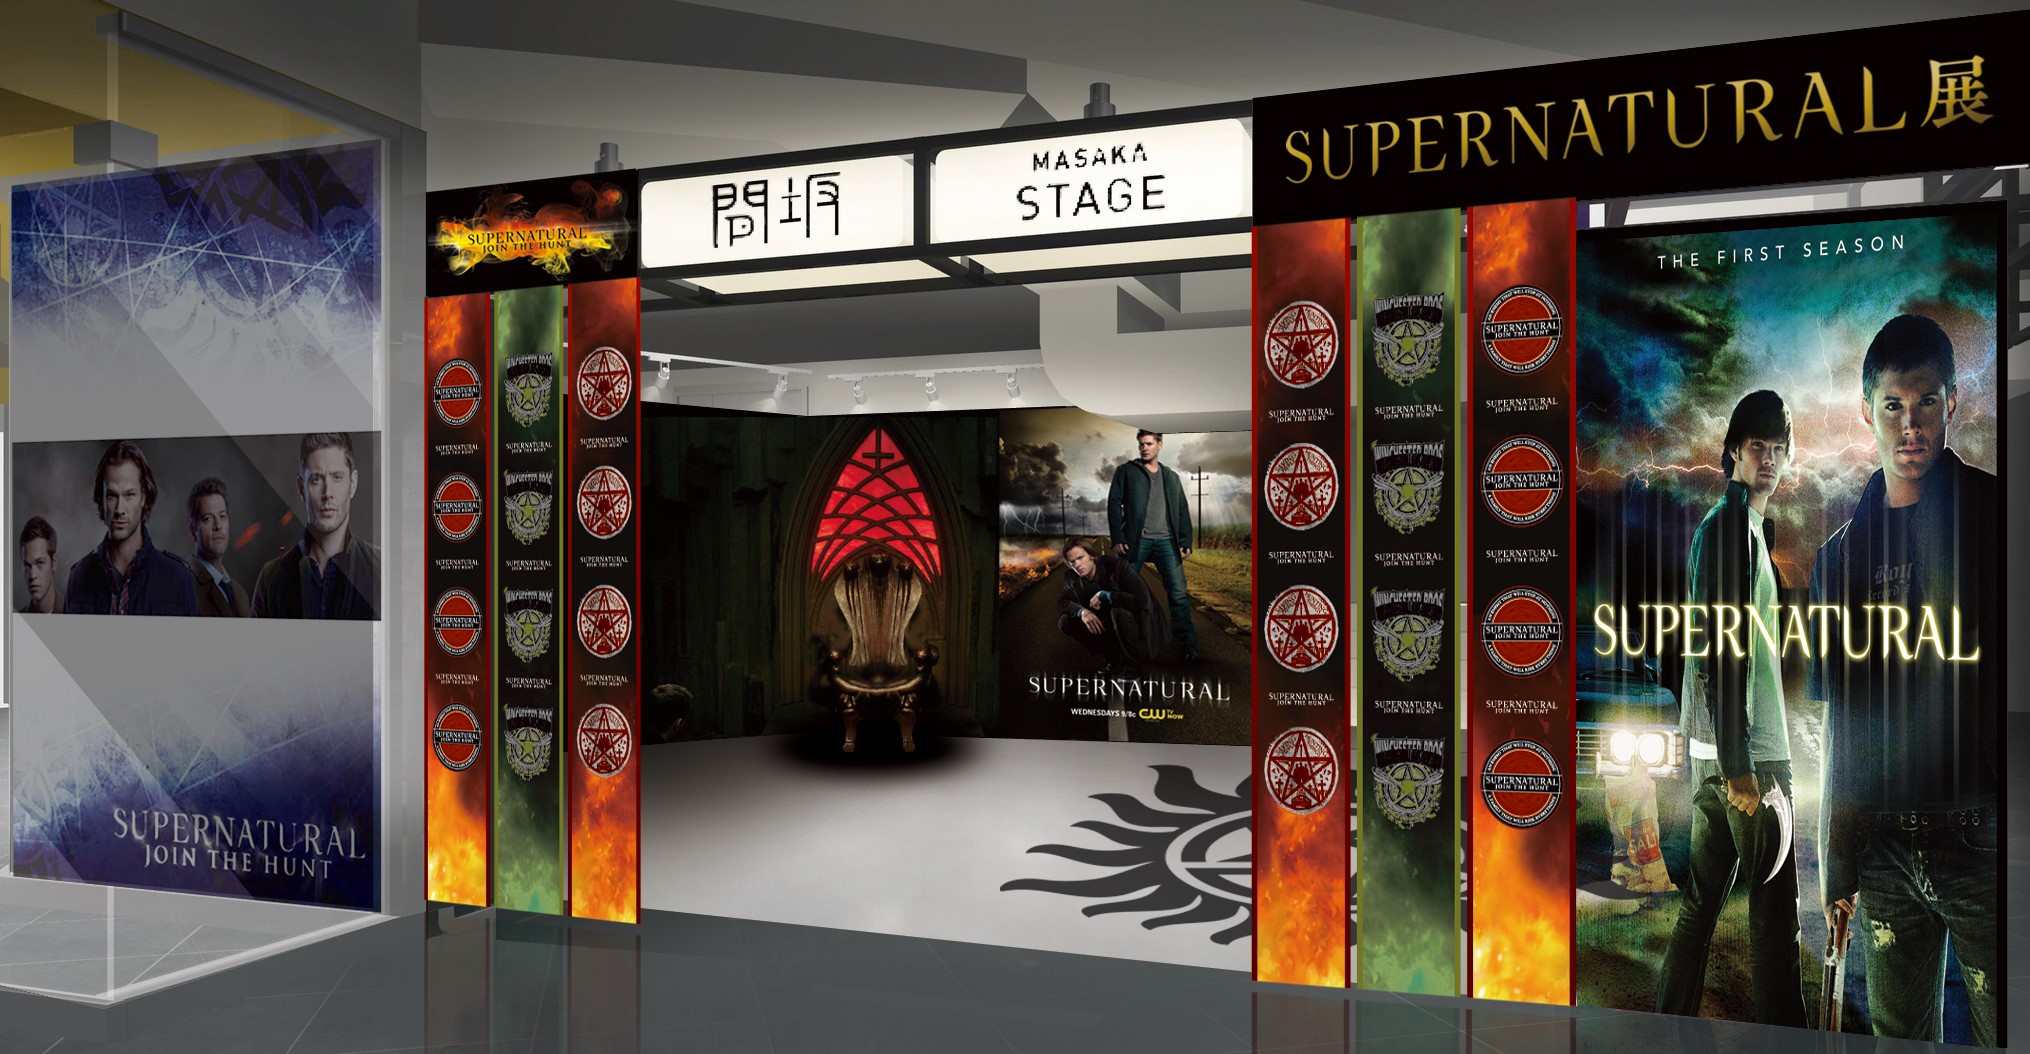 スパナチュの世界をまるごと体感 Supernatural展 5月26日より渋谷ロフトにて開催 Weekend Cinema